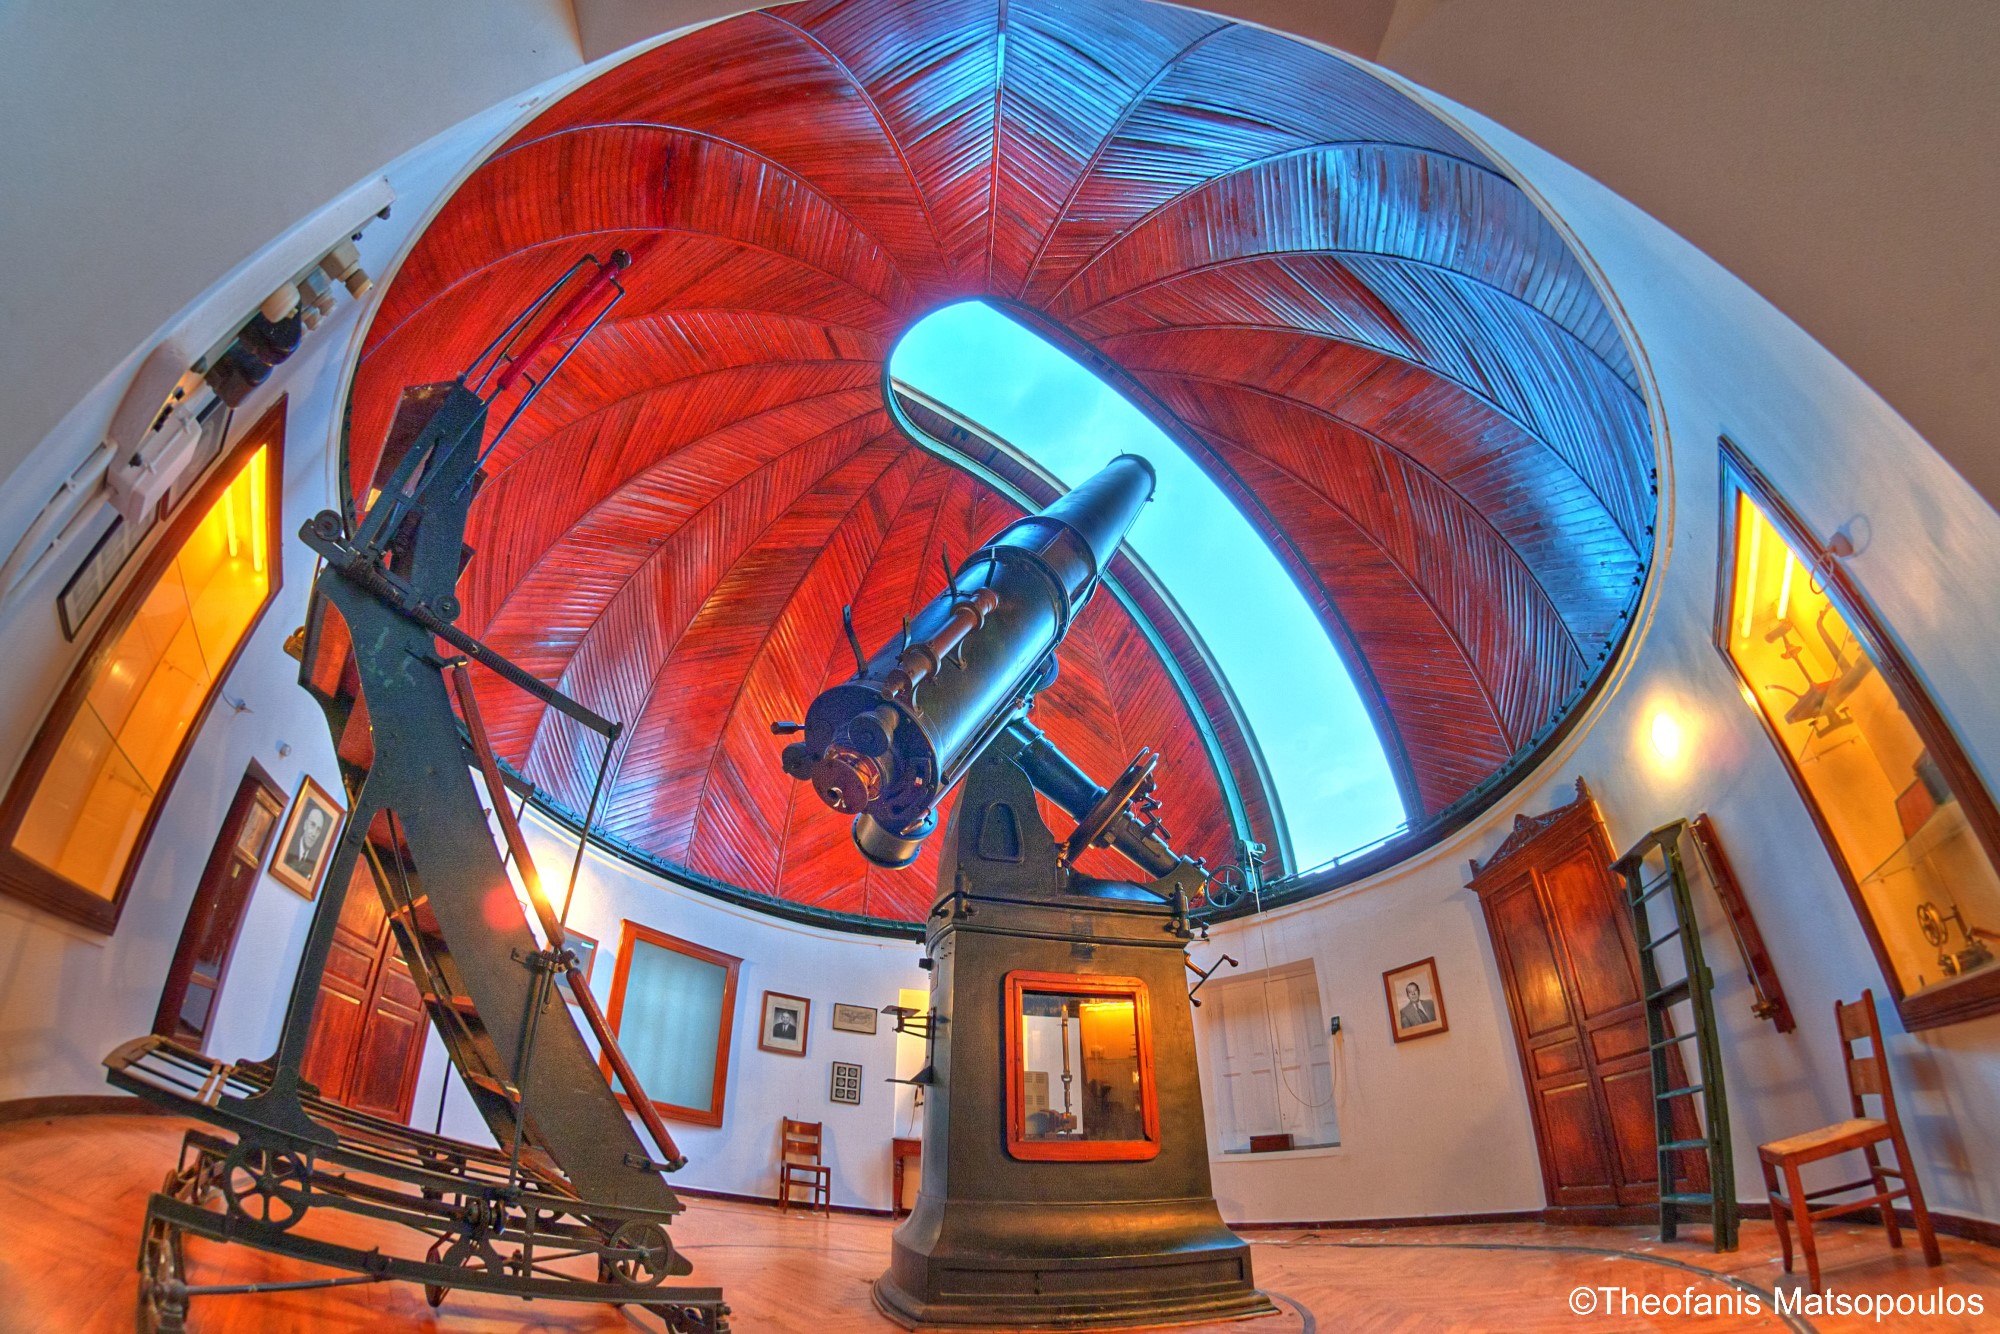 Iστορικό τηλεσκόπιο ξαναλειτουργεί στο Εθνικό Αστεροσκοπείο Αθηνών, με την υποστήριξη του ΟΤΕ και της COSMOTE